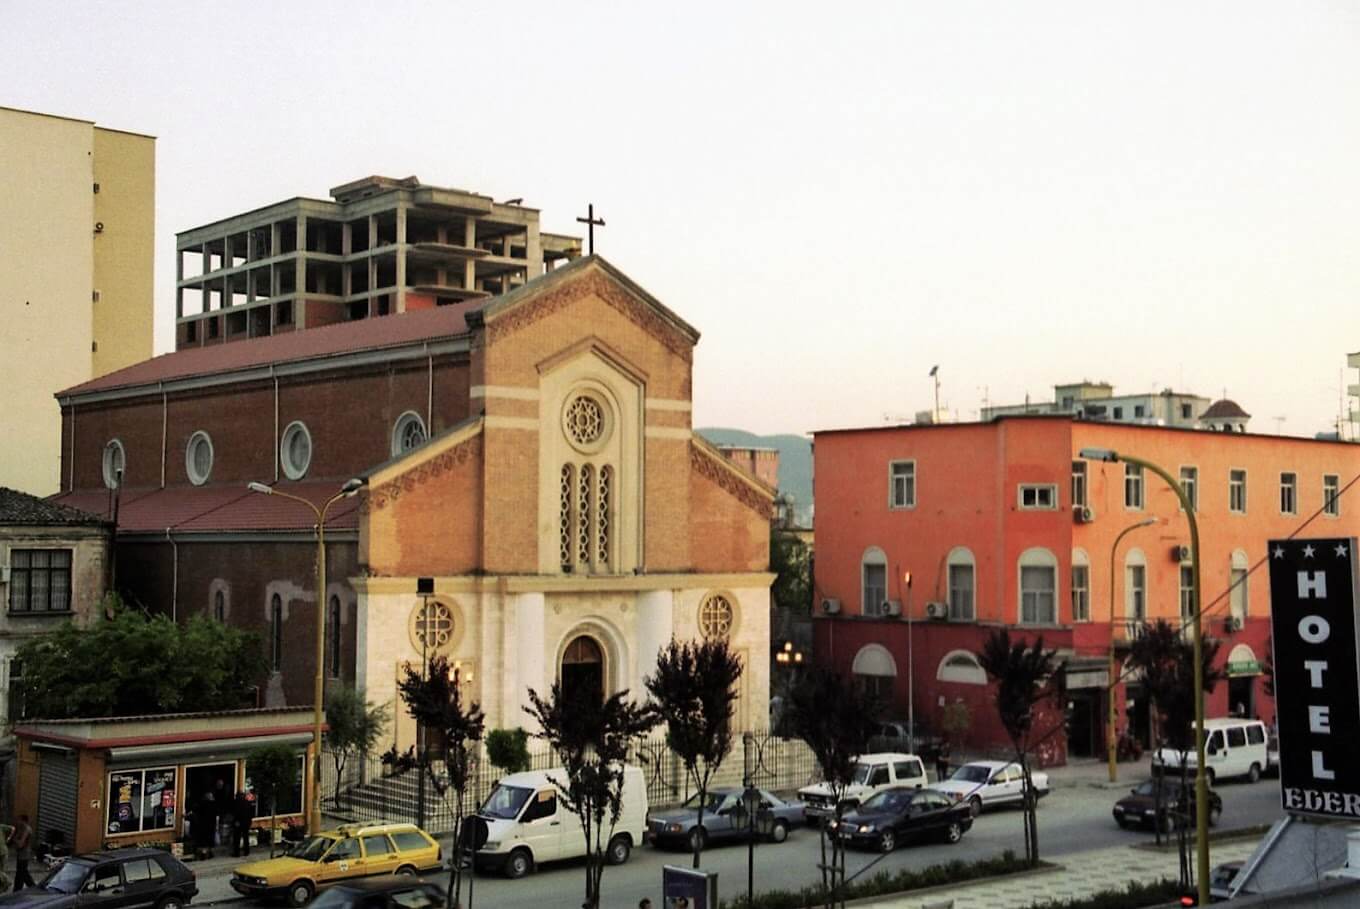 Kisha Katolike Zemra e Krishtit në Tiranë është një monument i rëndësishëm i trashëgimisë kulturore dhe një qendër e jetës fetare për komunitetin katolik